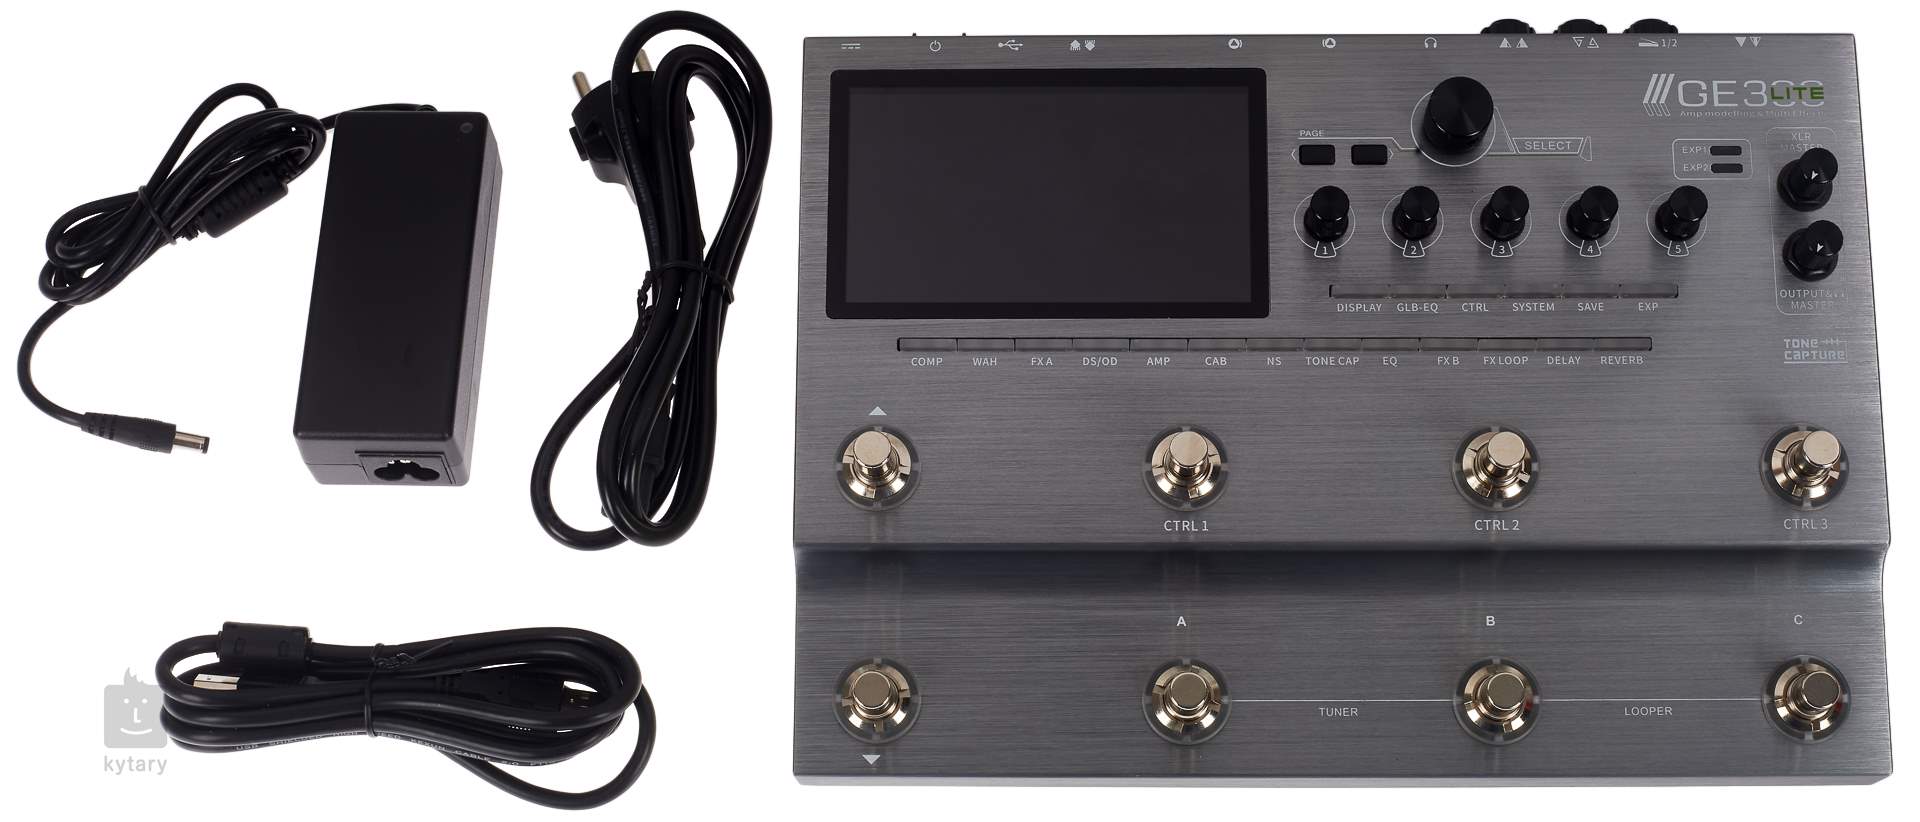 Mooer GE300 LITE - 配信機器・PA機器・レコーディング機器